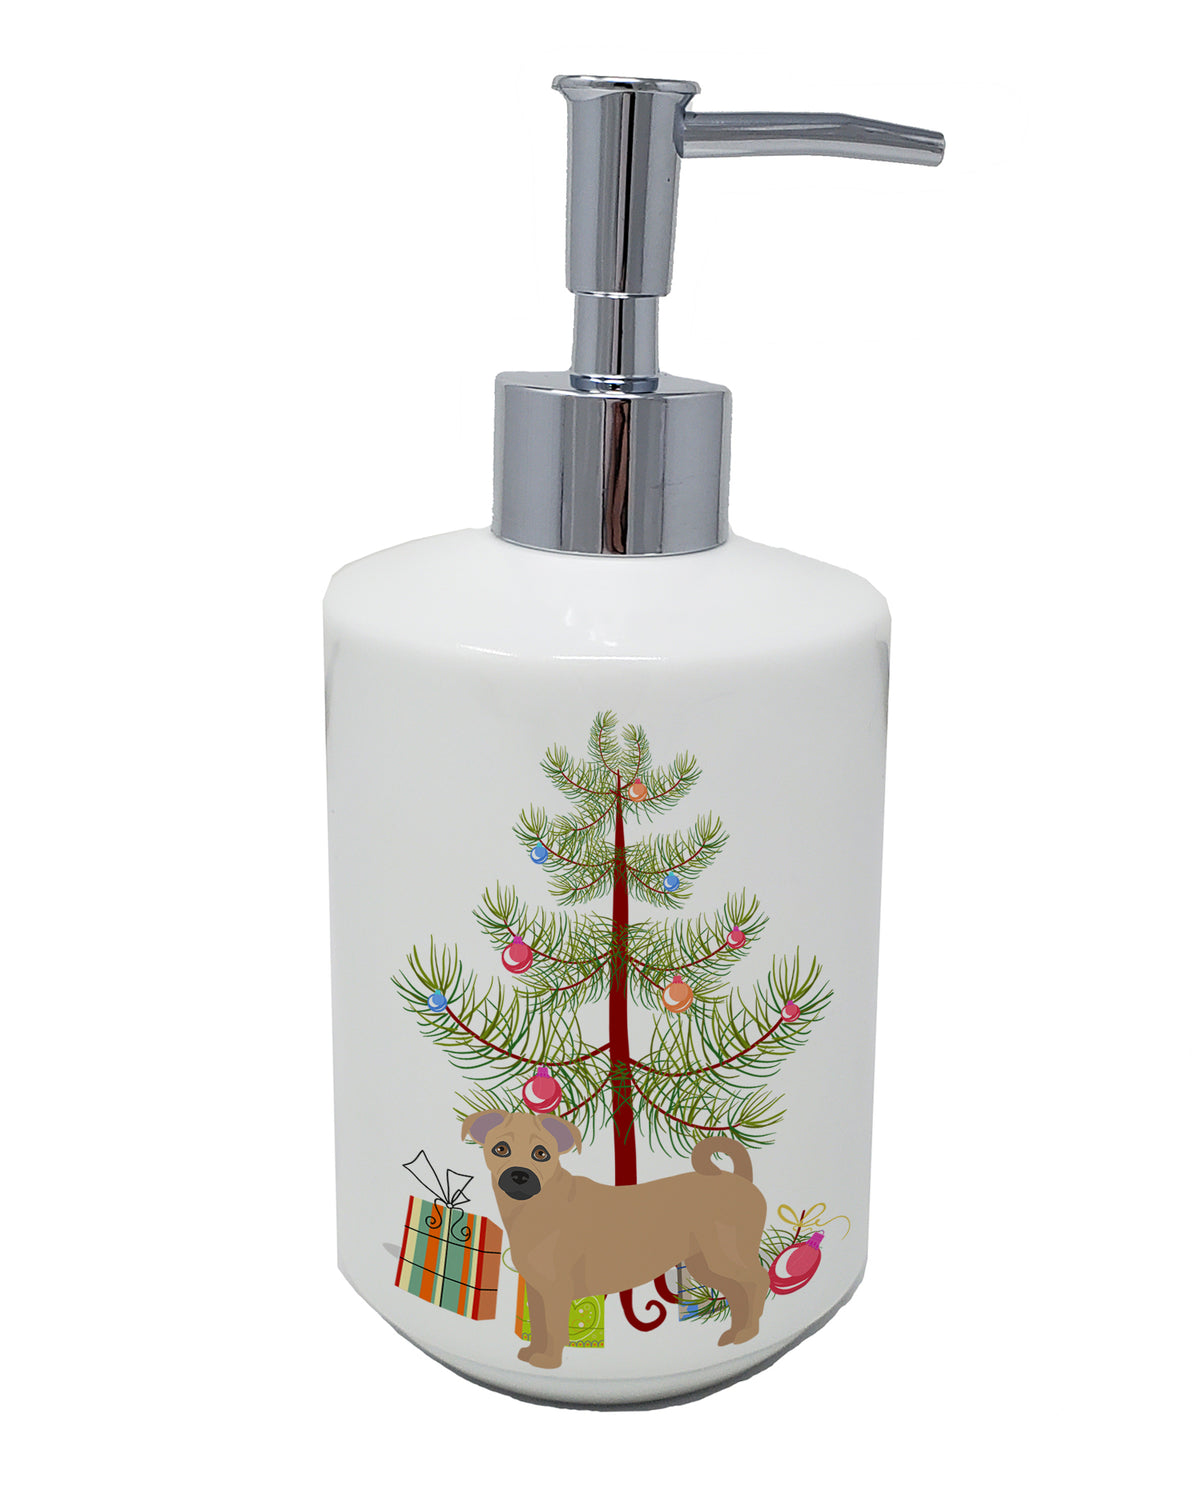 Buy this Tan Jug Christmas Tree Ceramic Soap Dispenser